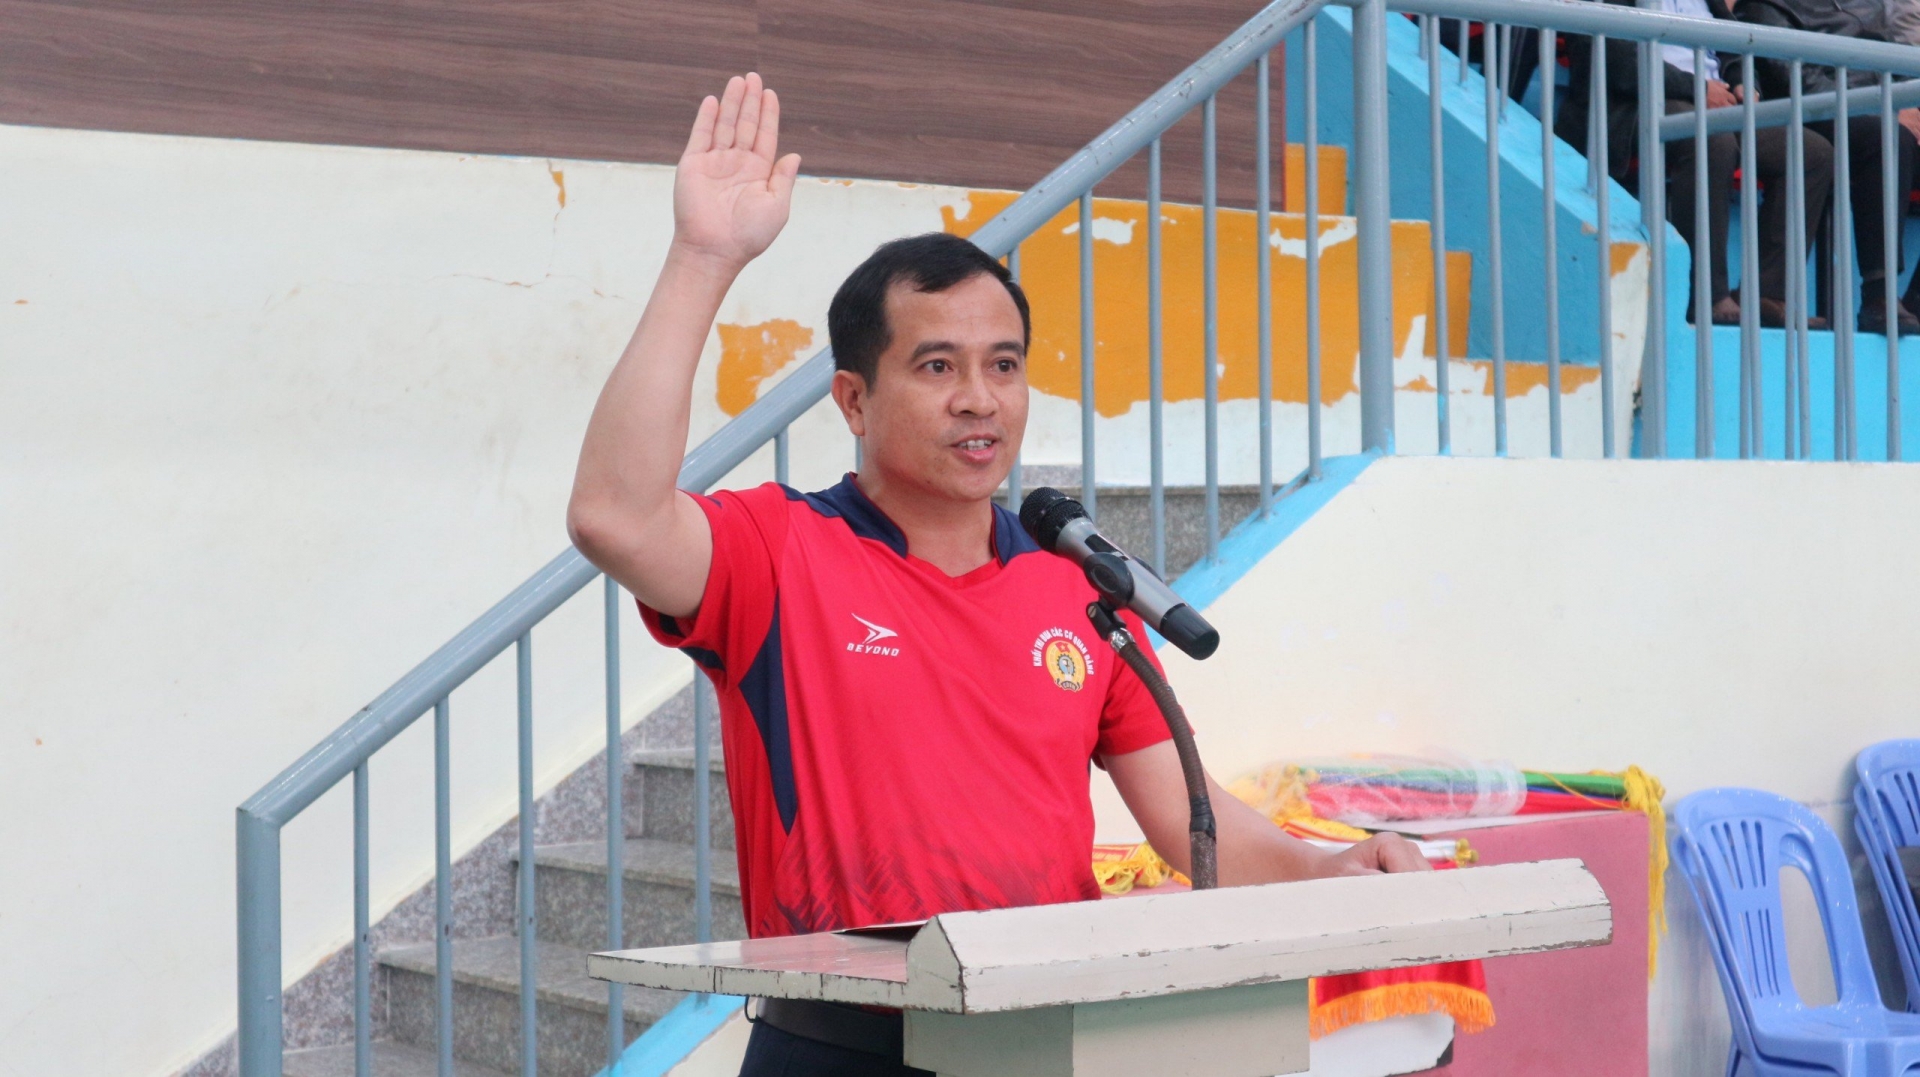 VĐV Nguyễn Duy Danh, CĐCS báo Lâm Đồng thay mặt 200 VĐV tuyên thệ thi đấu với tinh thần thể thao trong sáng